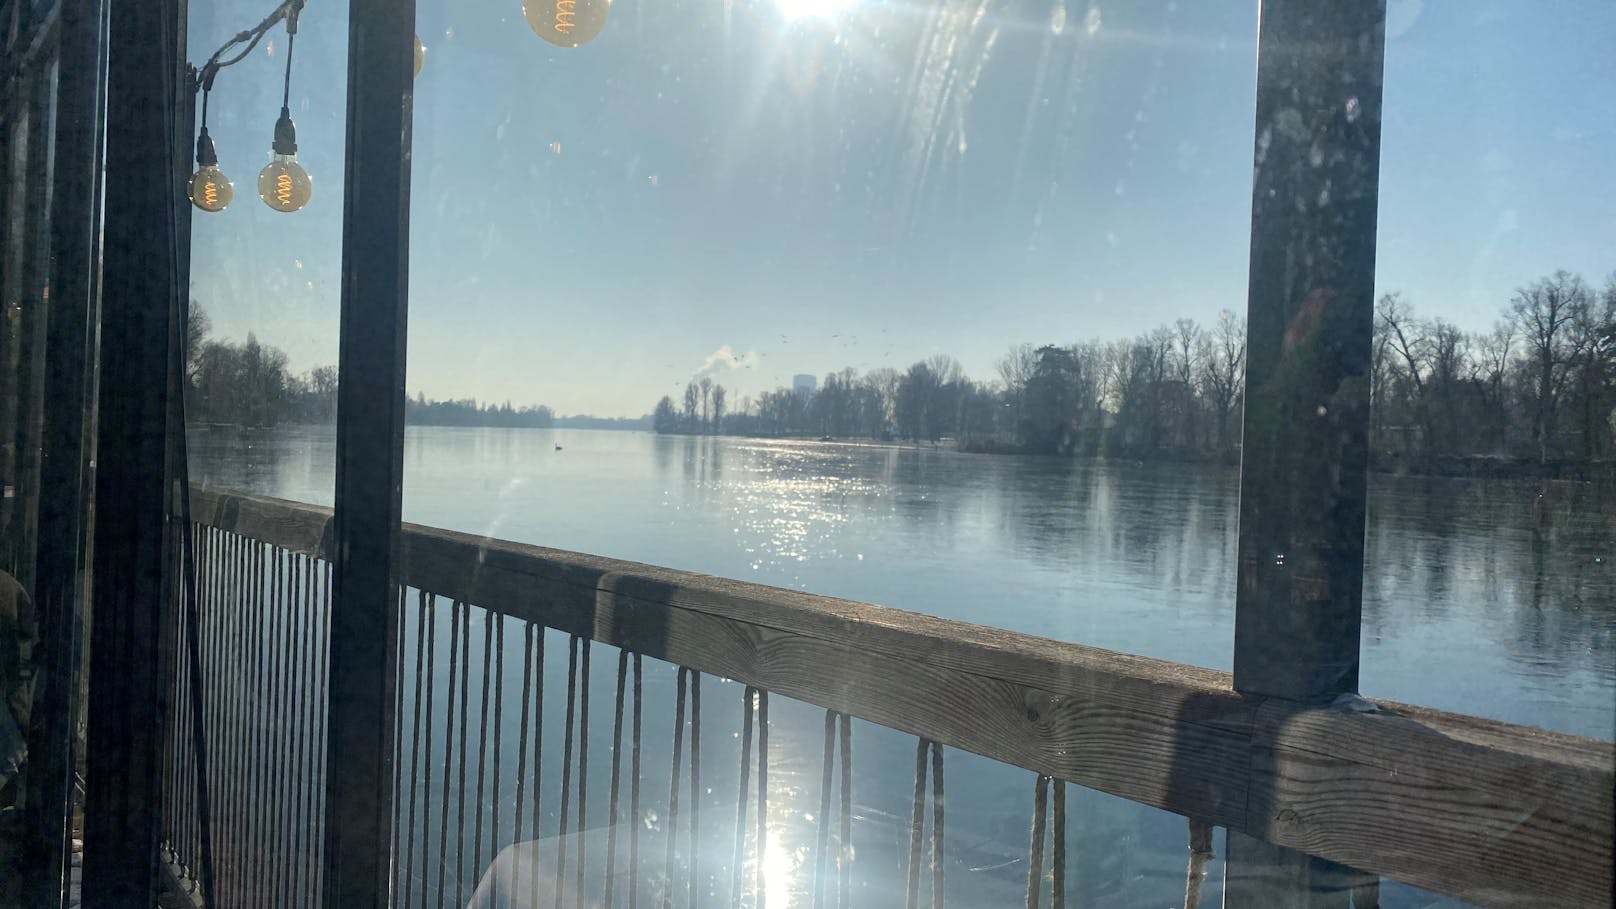 Scheint die Sonne, wird es im Glashaus schön warm und der Heizstrahler bleibt aus. Draußen können die Vögel beobachtet werden, die über die zugefrorene Alte Donau spazieren.